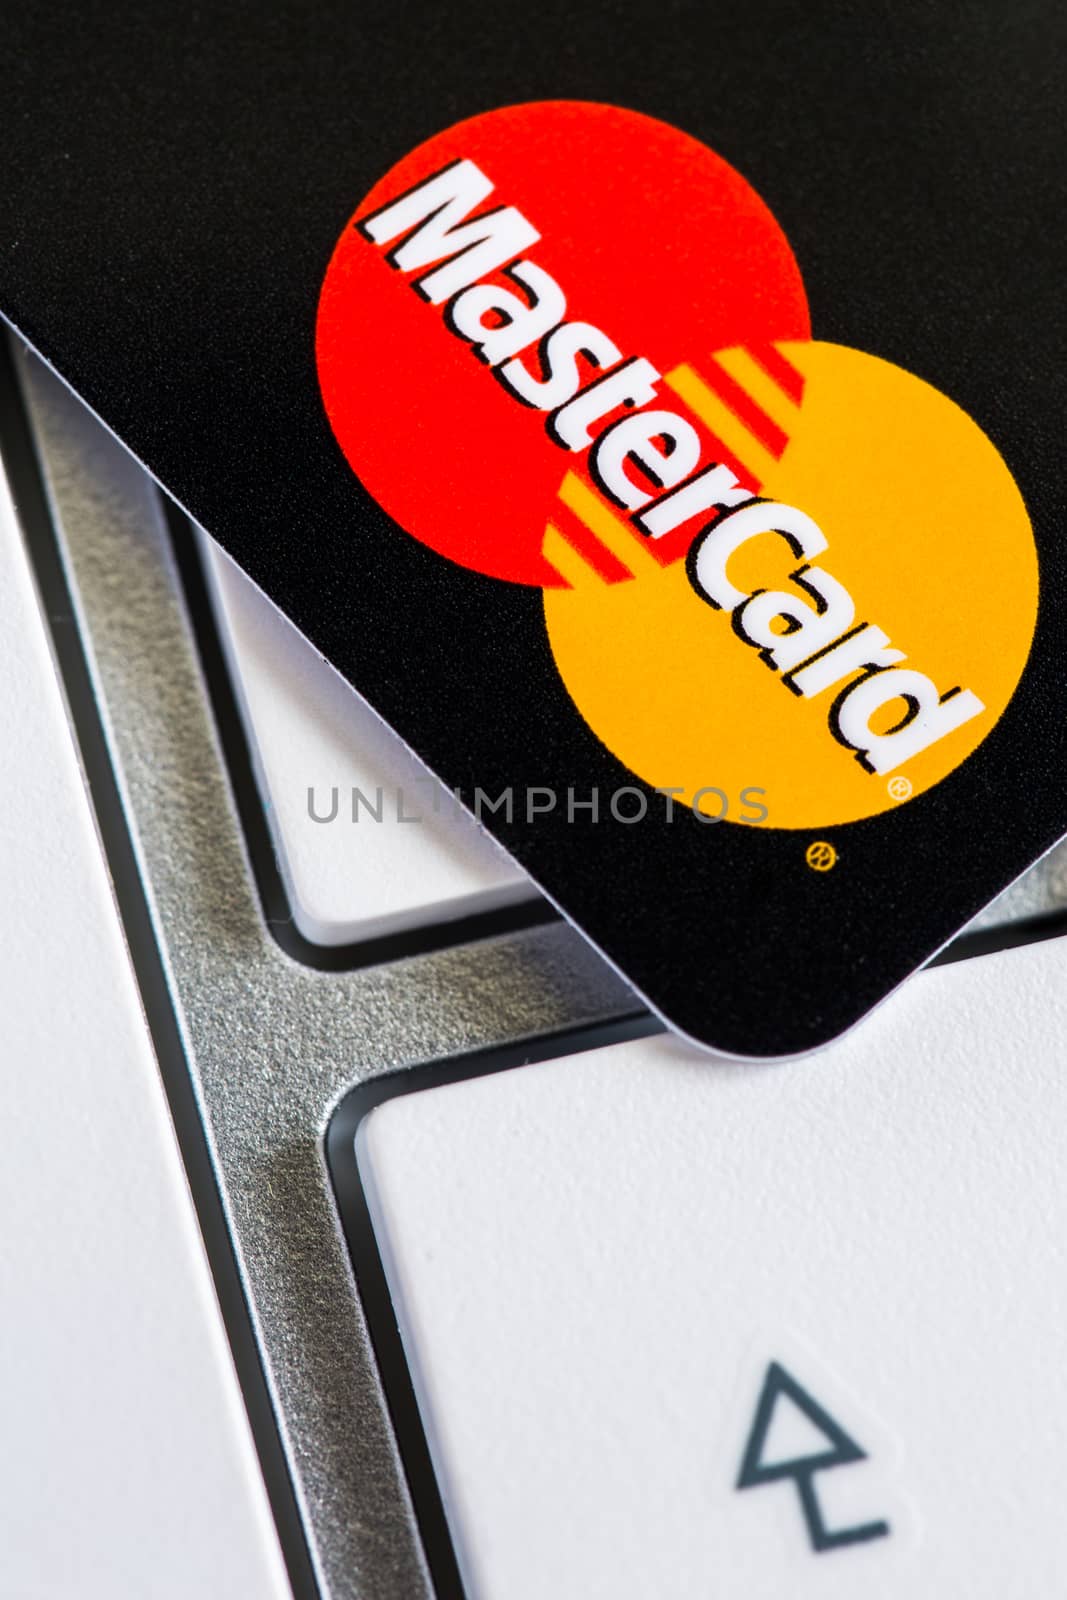 Benon, France - Feb 08, 2017: MasterCard credit card on keyboard, close up photo